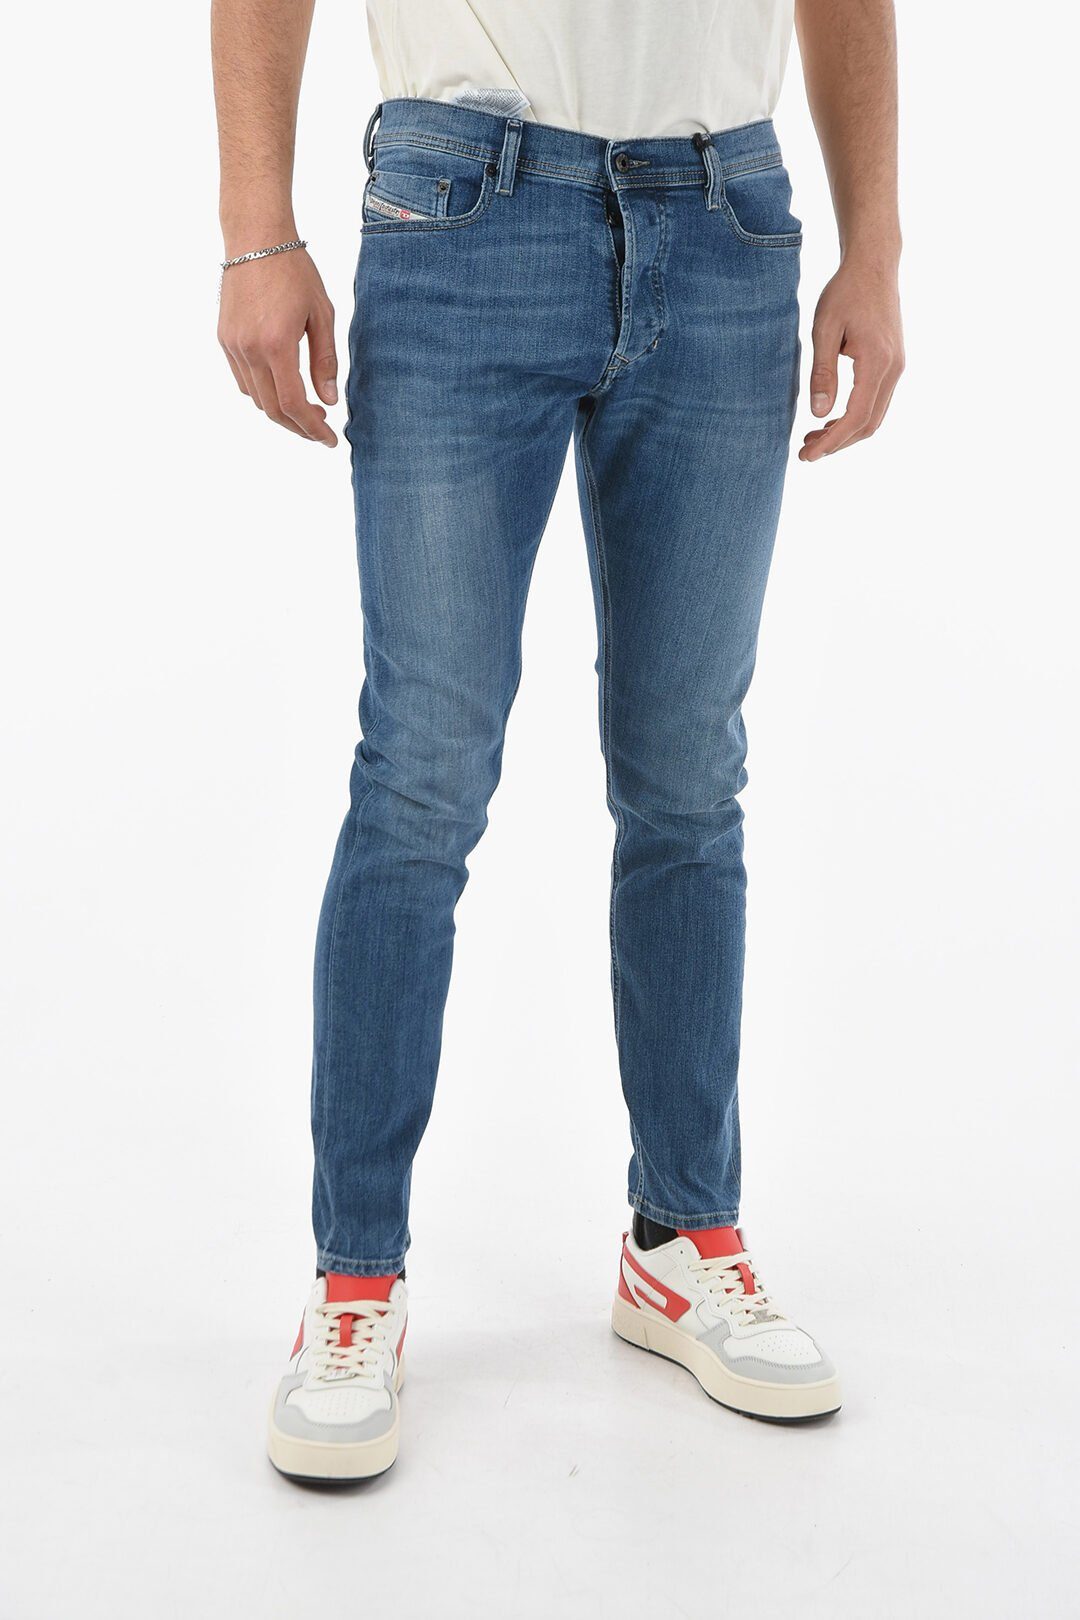 Diesel Slim-fit-Jeans 0857P 5 Herren Pocket-Style, Jeans Röhrenjeans, Stretch Blau, Diesel Tepphar